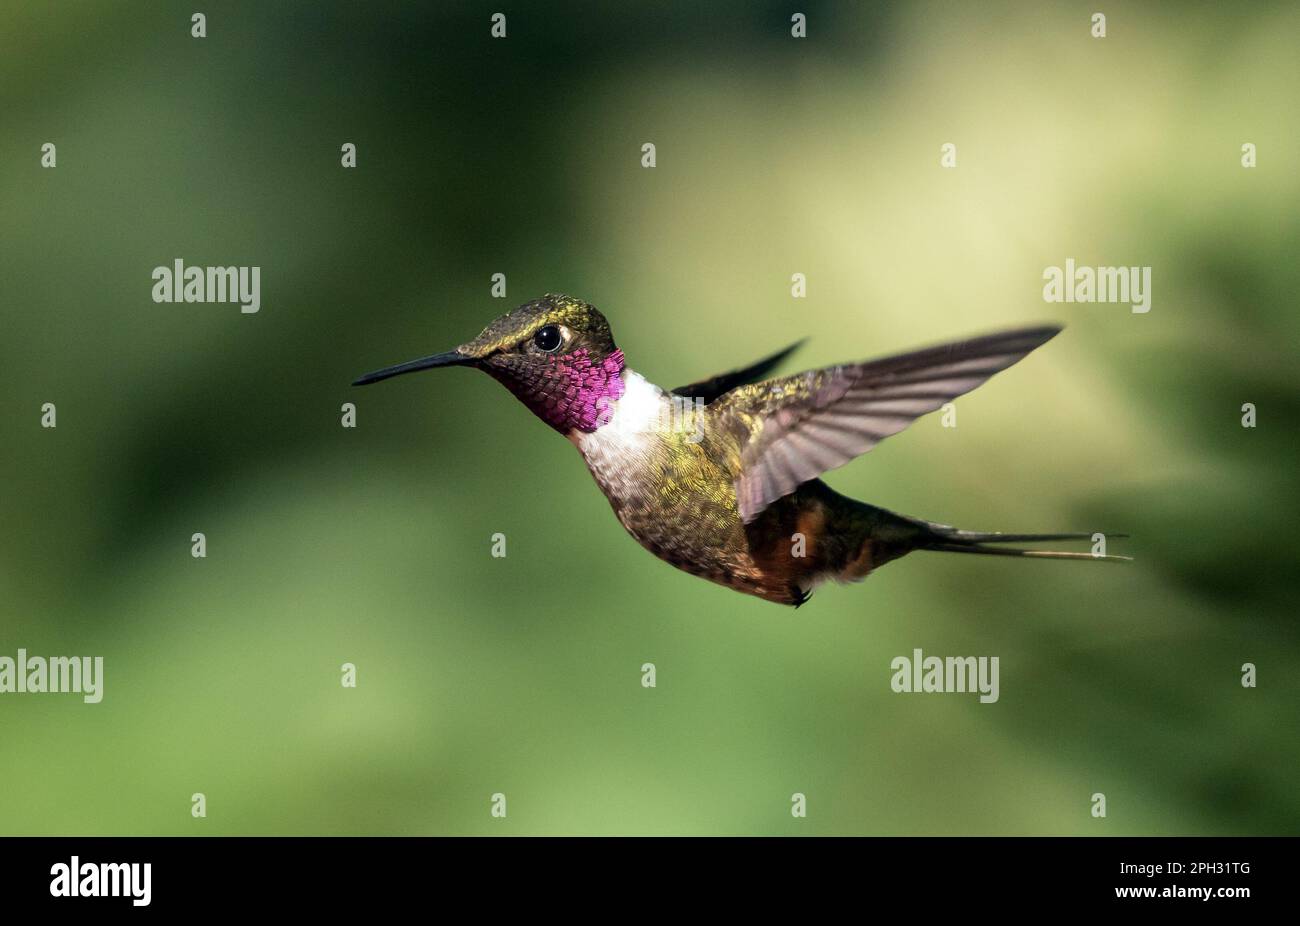 Nahaufnahme des winzigen Kolibri Magenta-throated Woodstar im Flug.Wissenschaftlicher Name ist Calliphlox bryantae. Hintergrund-Bokeh grün Stockfoto